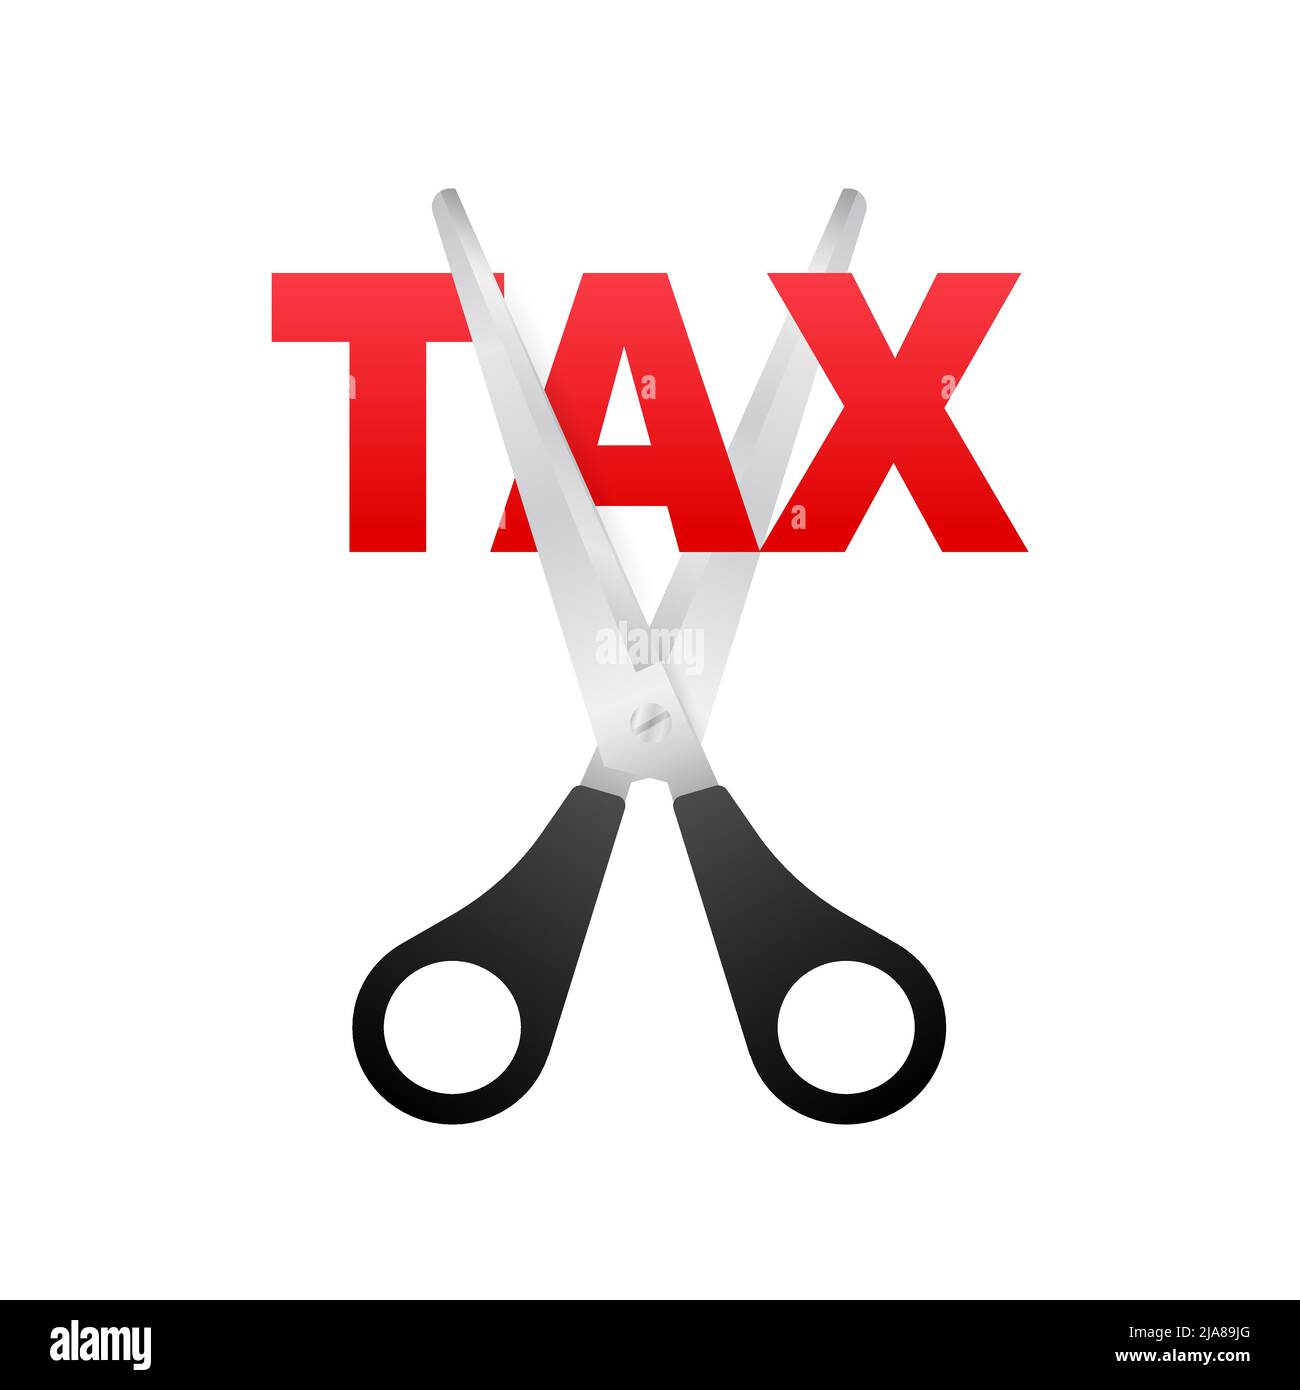 Steuersenkung im Cartoon-Stil auf schwarzem Hintergrund. Vektorgrafik, Zeichentrickfigur. Bearbeitbare Kontur. Stock Vektor